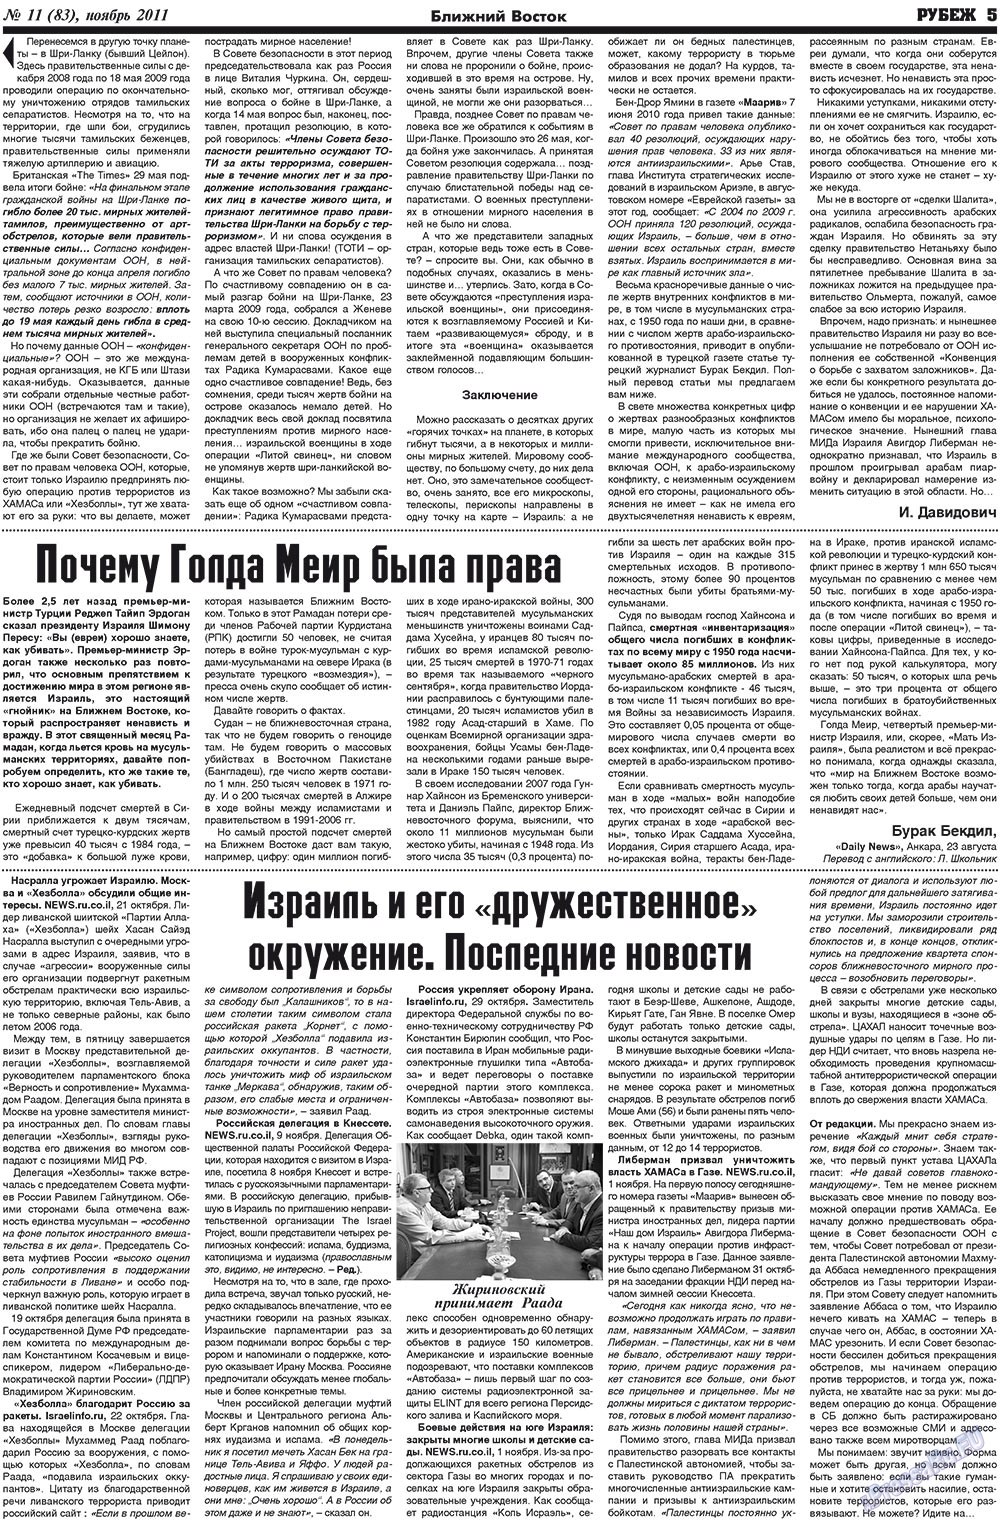 Рубеж (газета). 2011 год, номер 11, стр. 5